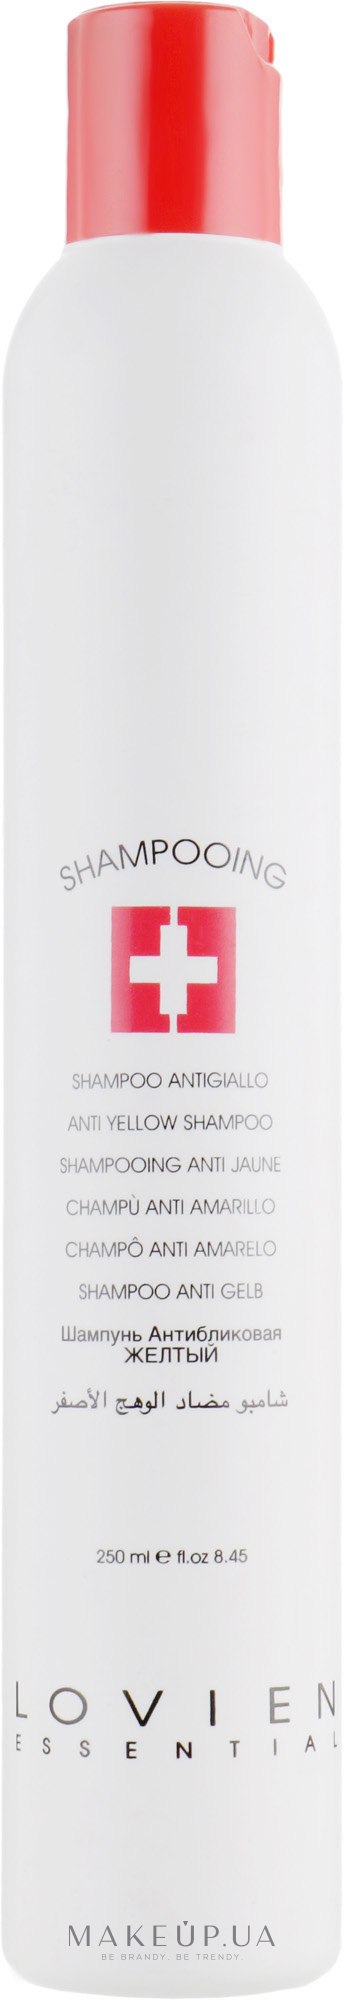 Шампунь антижовтий - Lovien Essential Shampoo Аnti-Yellow — фото 250ml